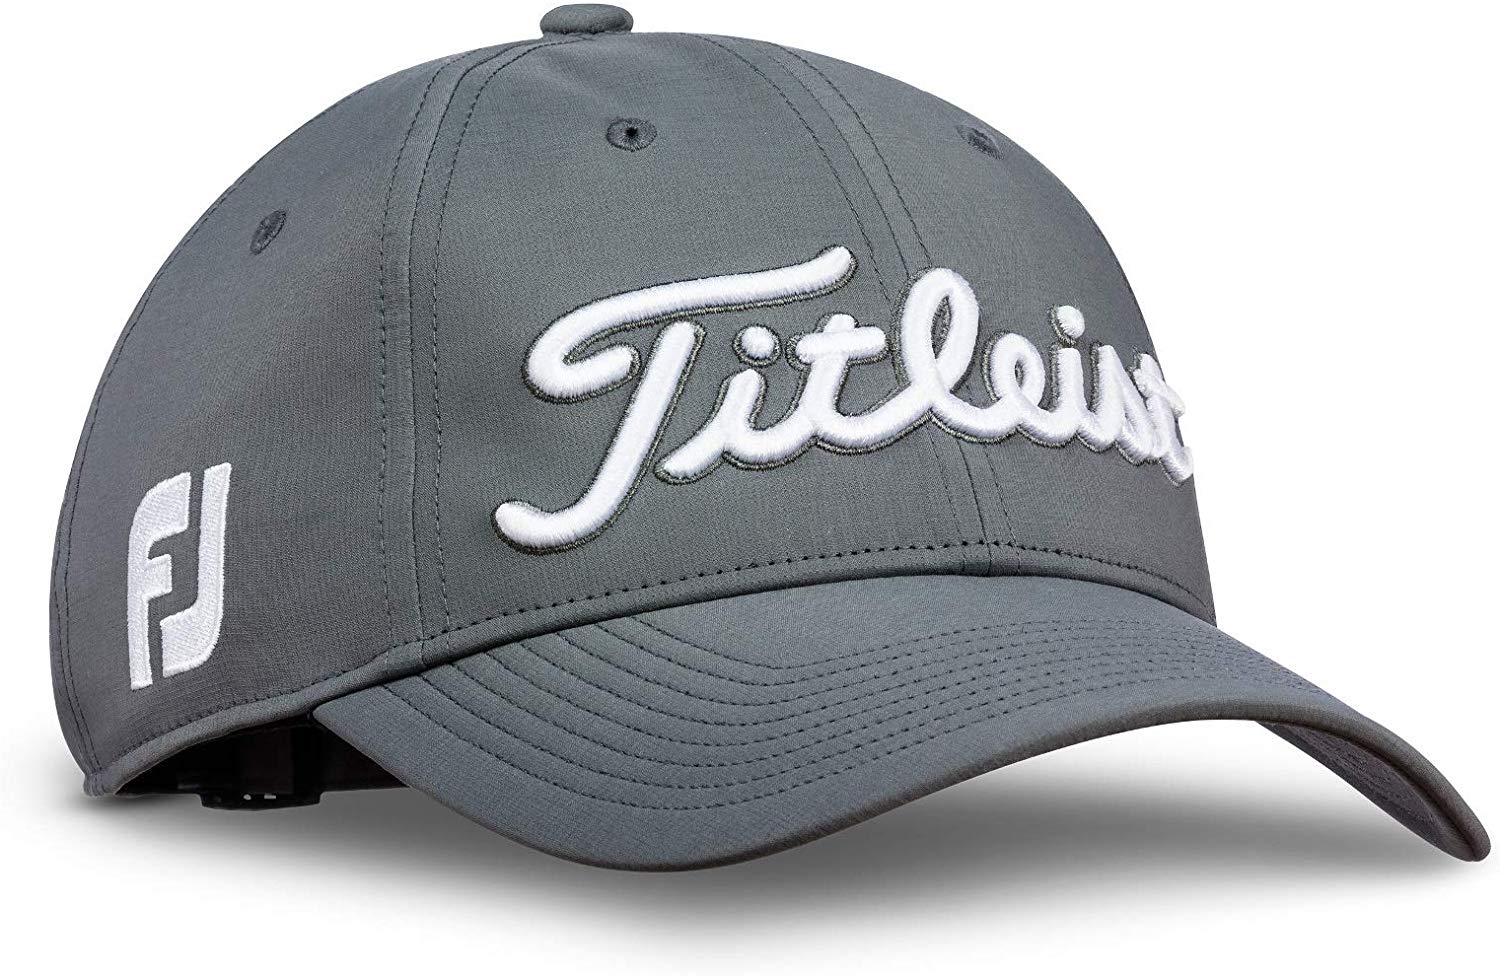 Titleist Mens Standard Tour Performance Golf Caps